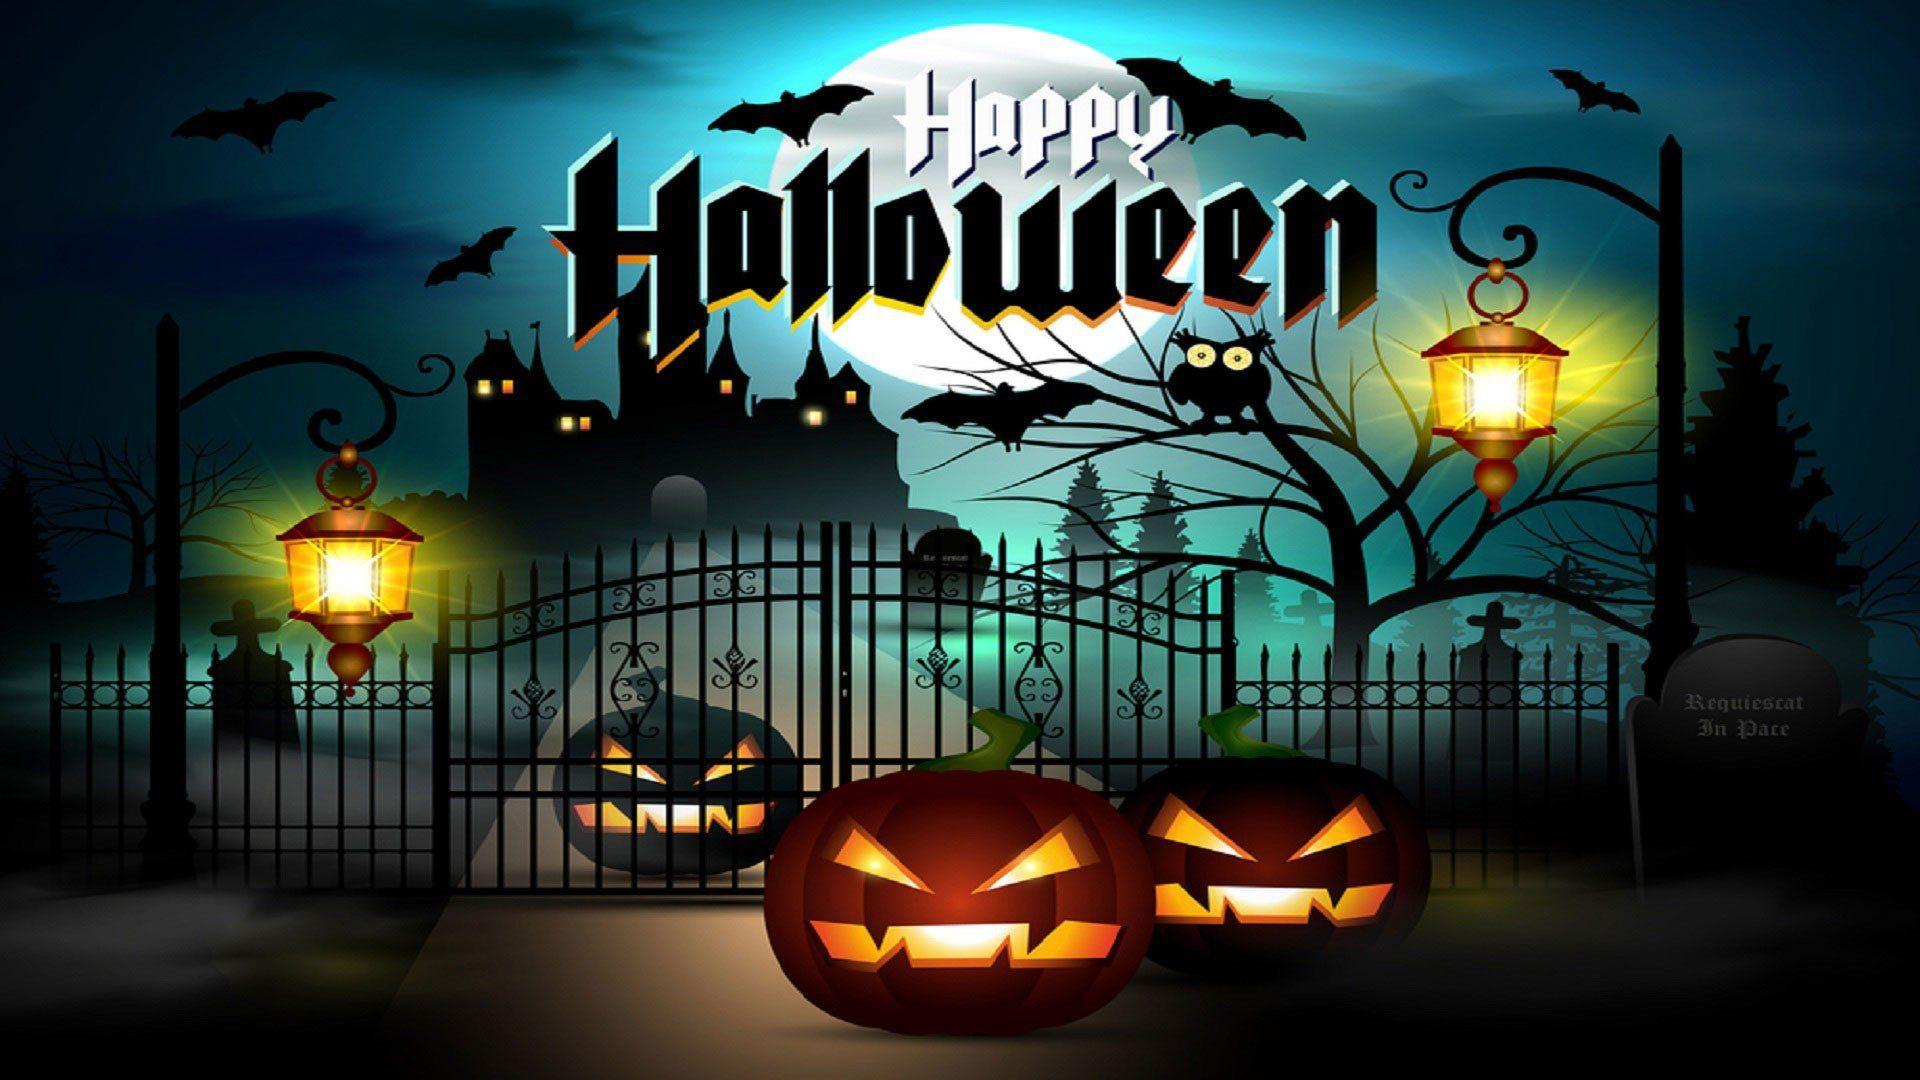 Halloween Wallpaper. Free Download Halloween Wallpaper in HDK